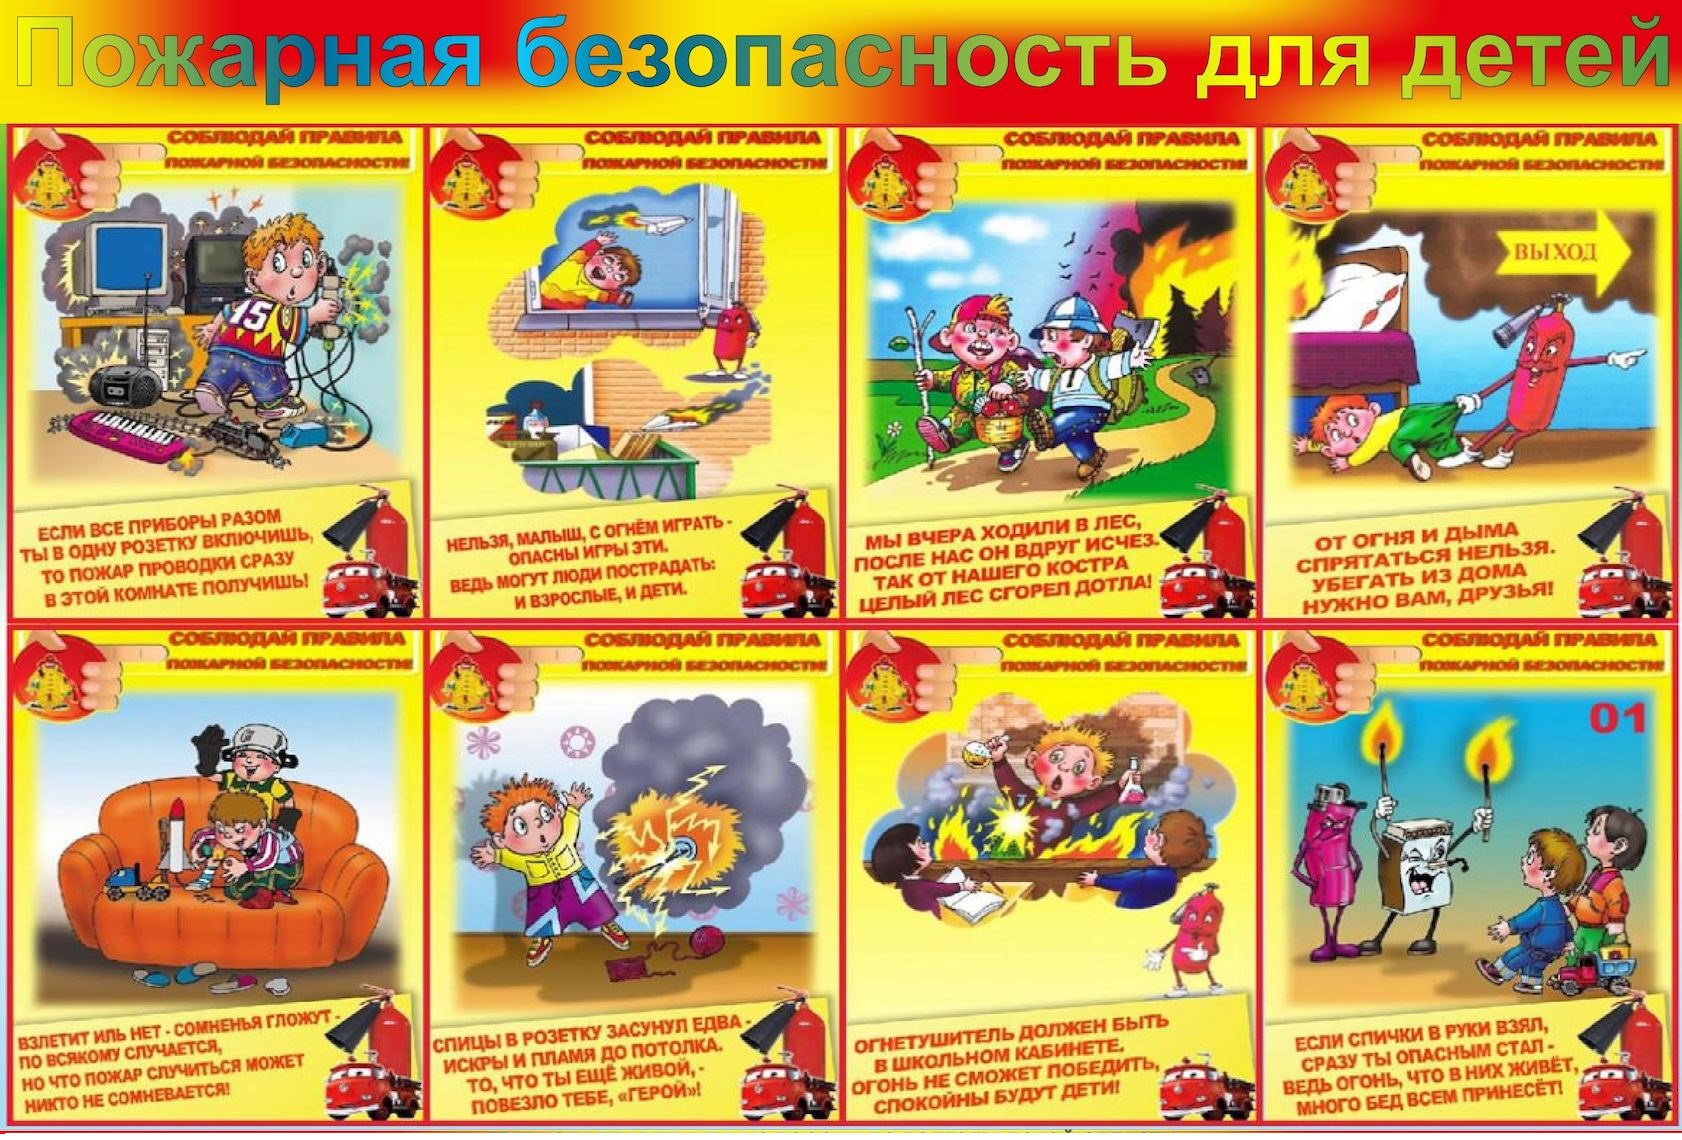 Сценарии обж. Памятка правил пожарной безопасности для детей. ТБ по пожарной безопасности для детей. Правила пожарной безопасноят.